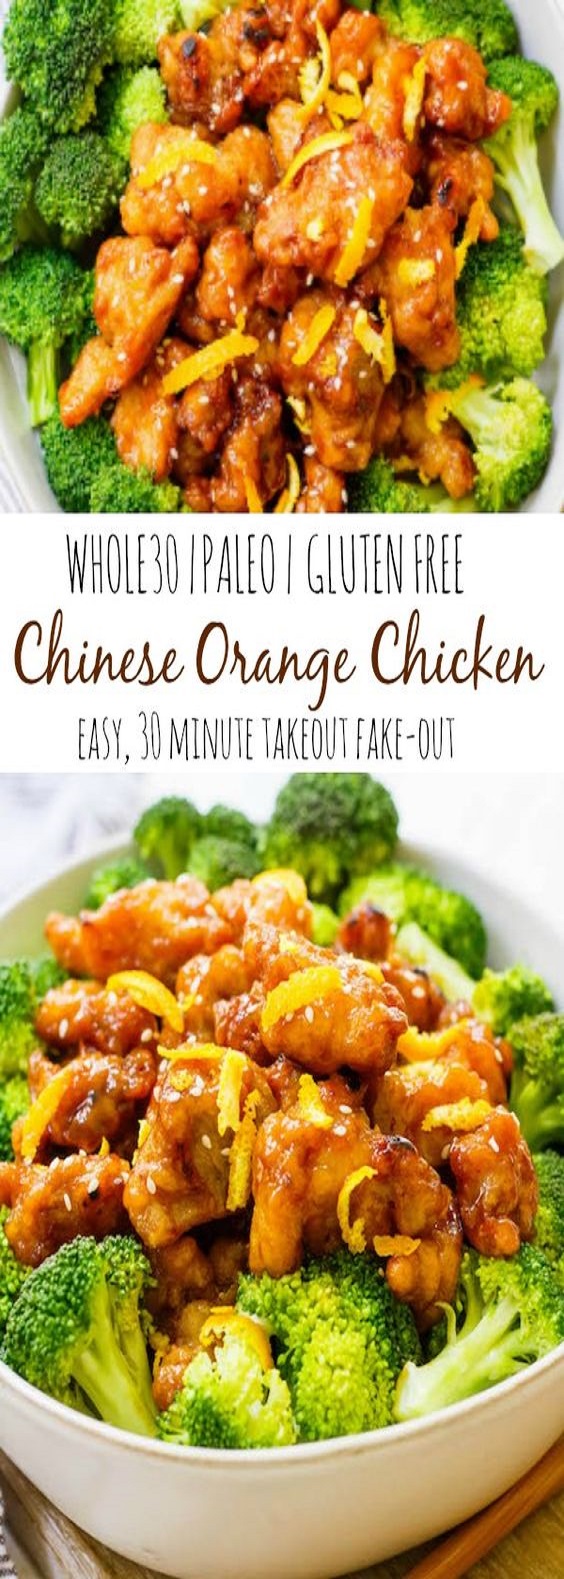 Chinese Orange Chicken, Paleo-Gluten-Free - WONDERFUL RECIPES